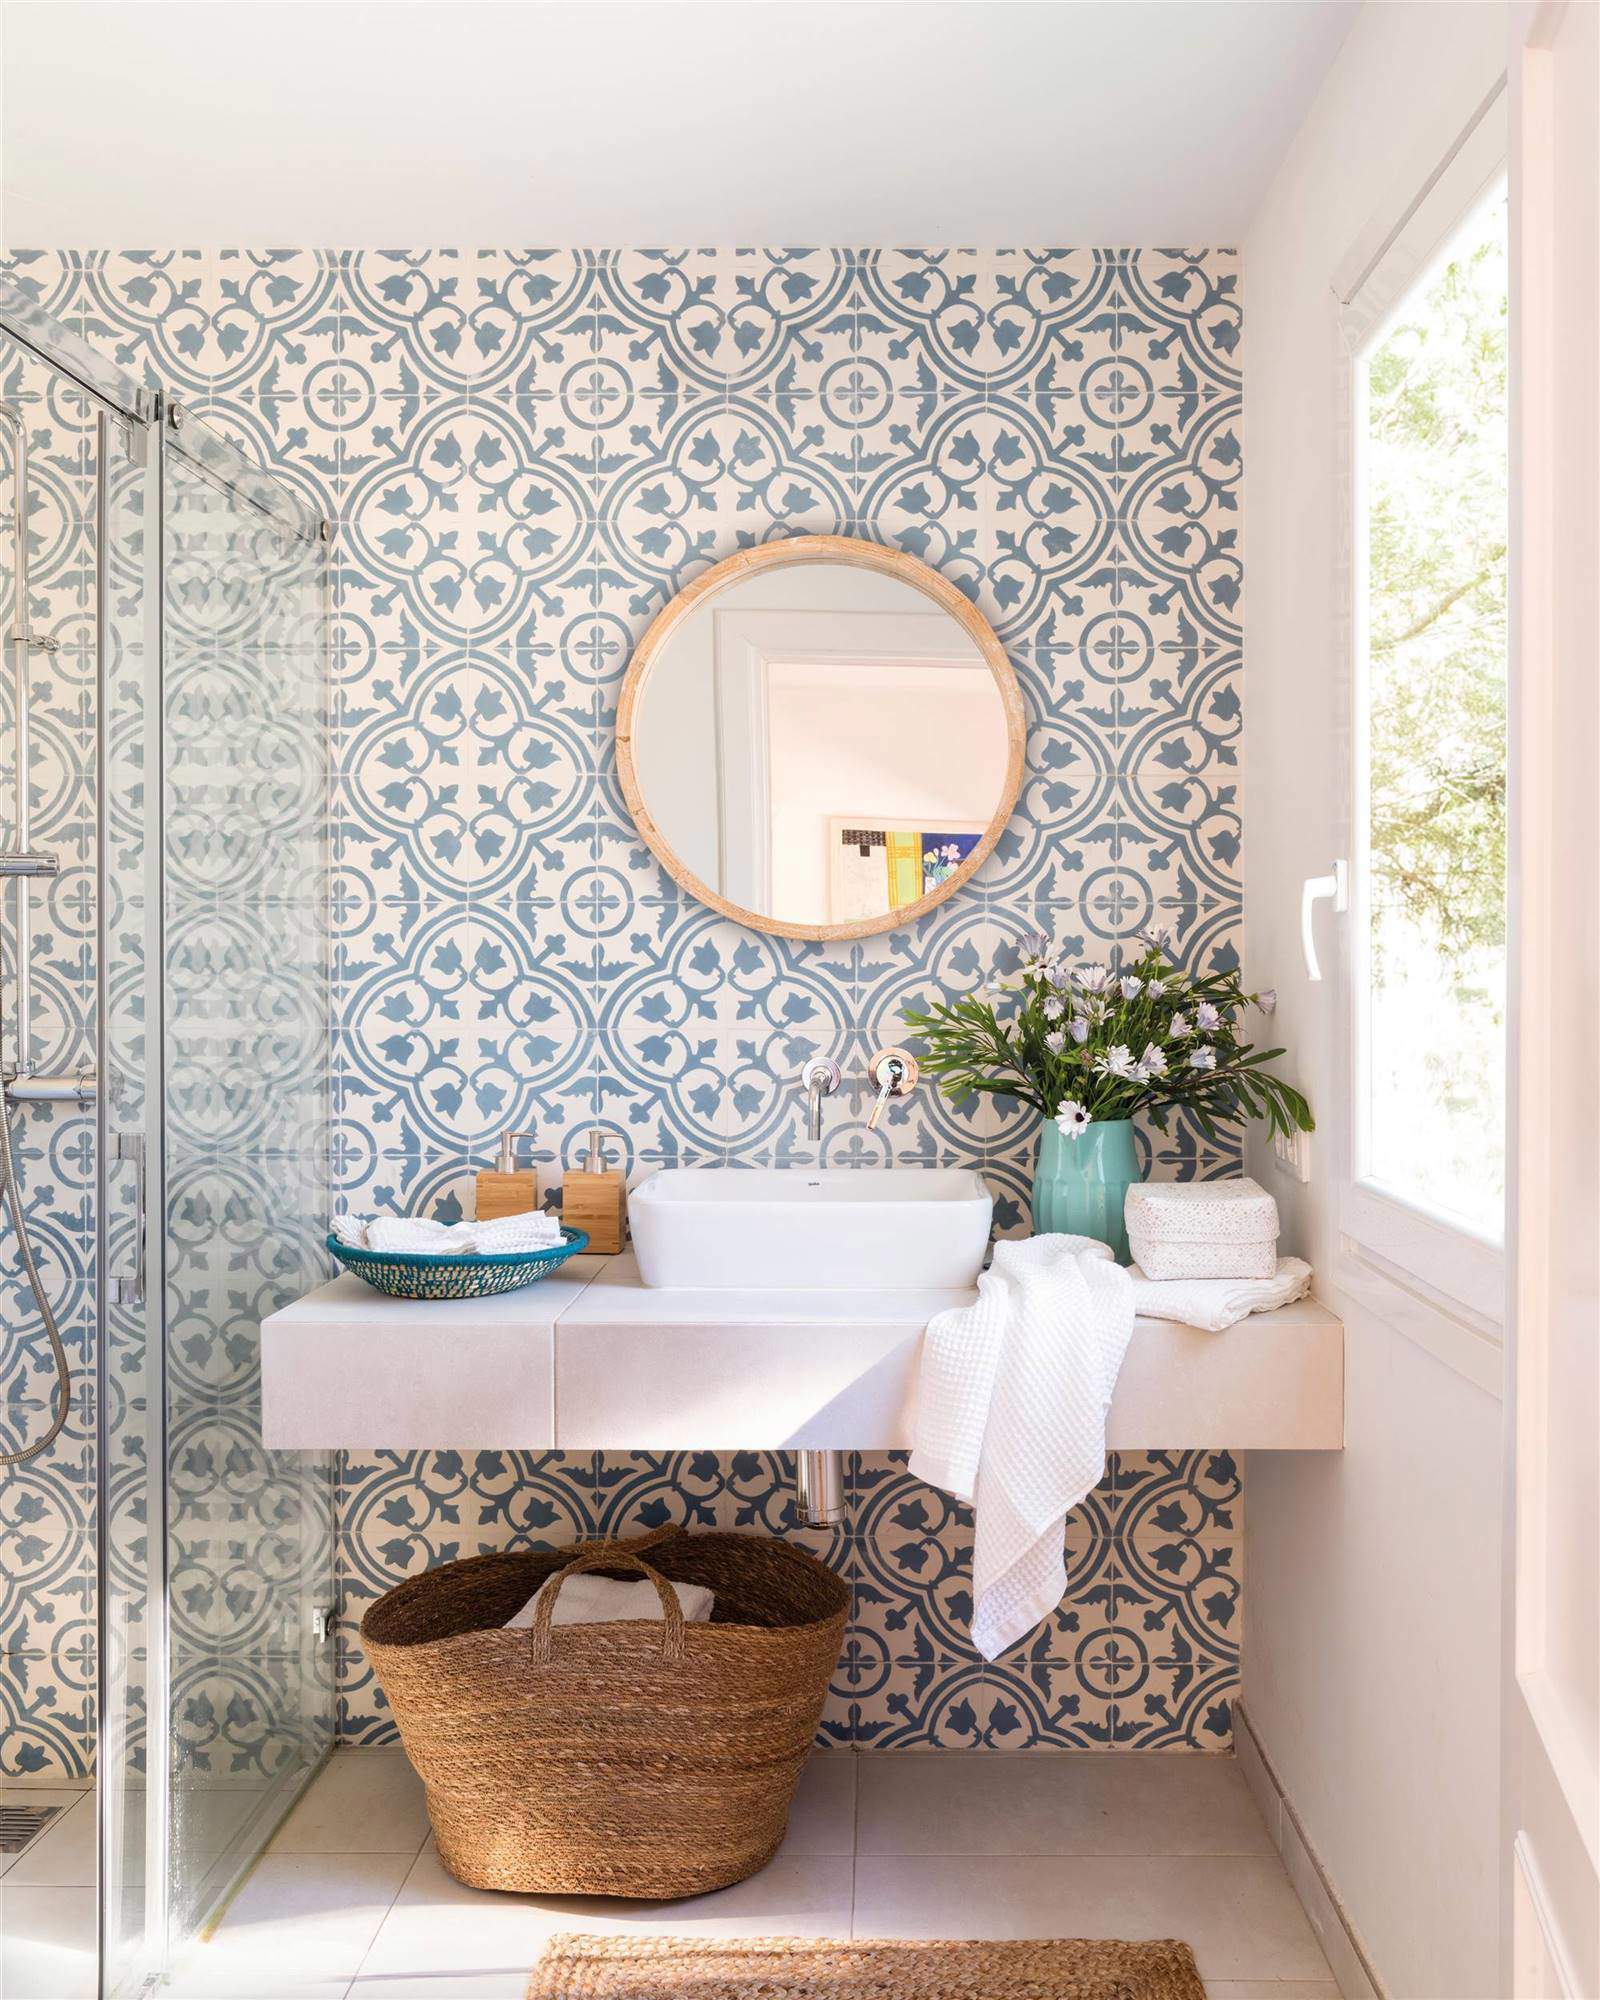 Paredes del baño con azulejo imitación hidráulico.